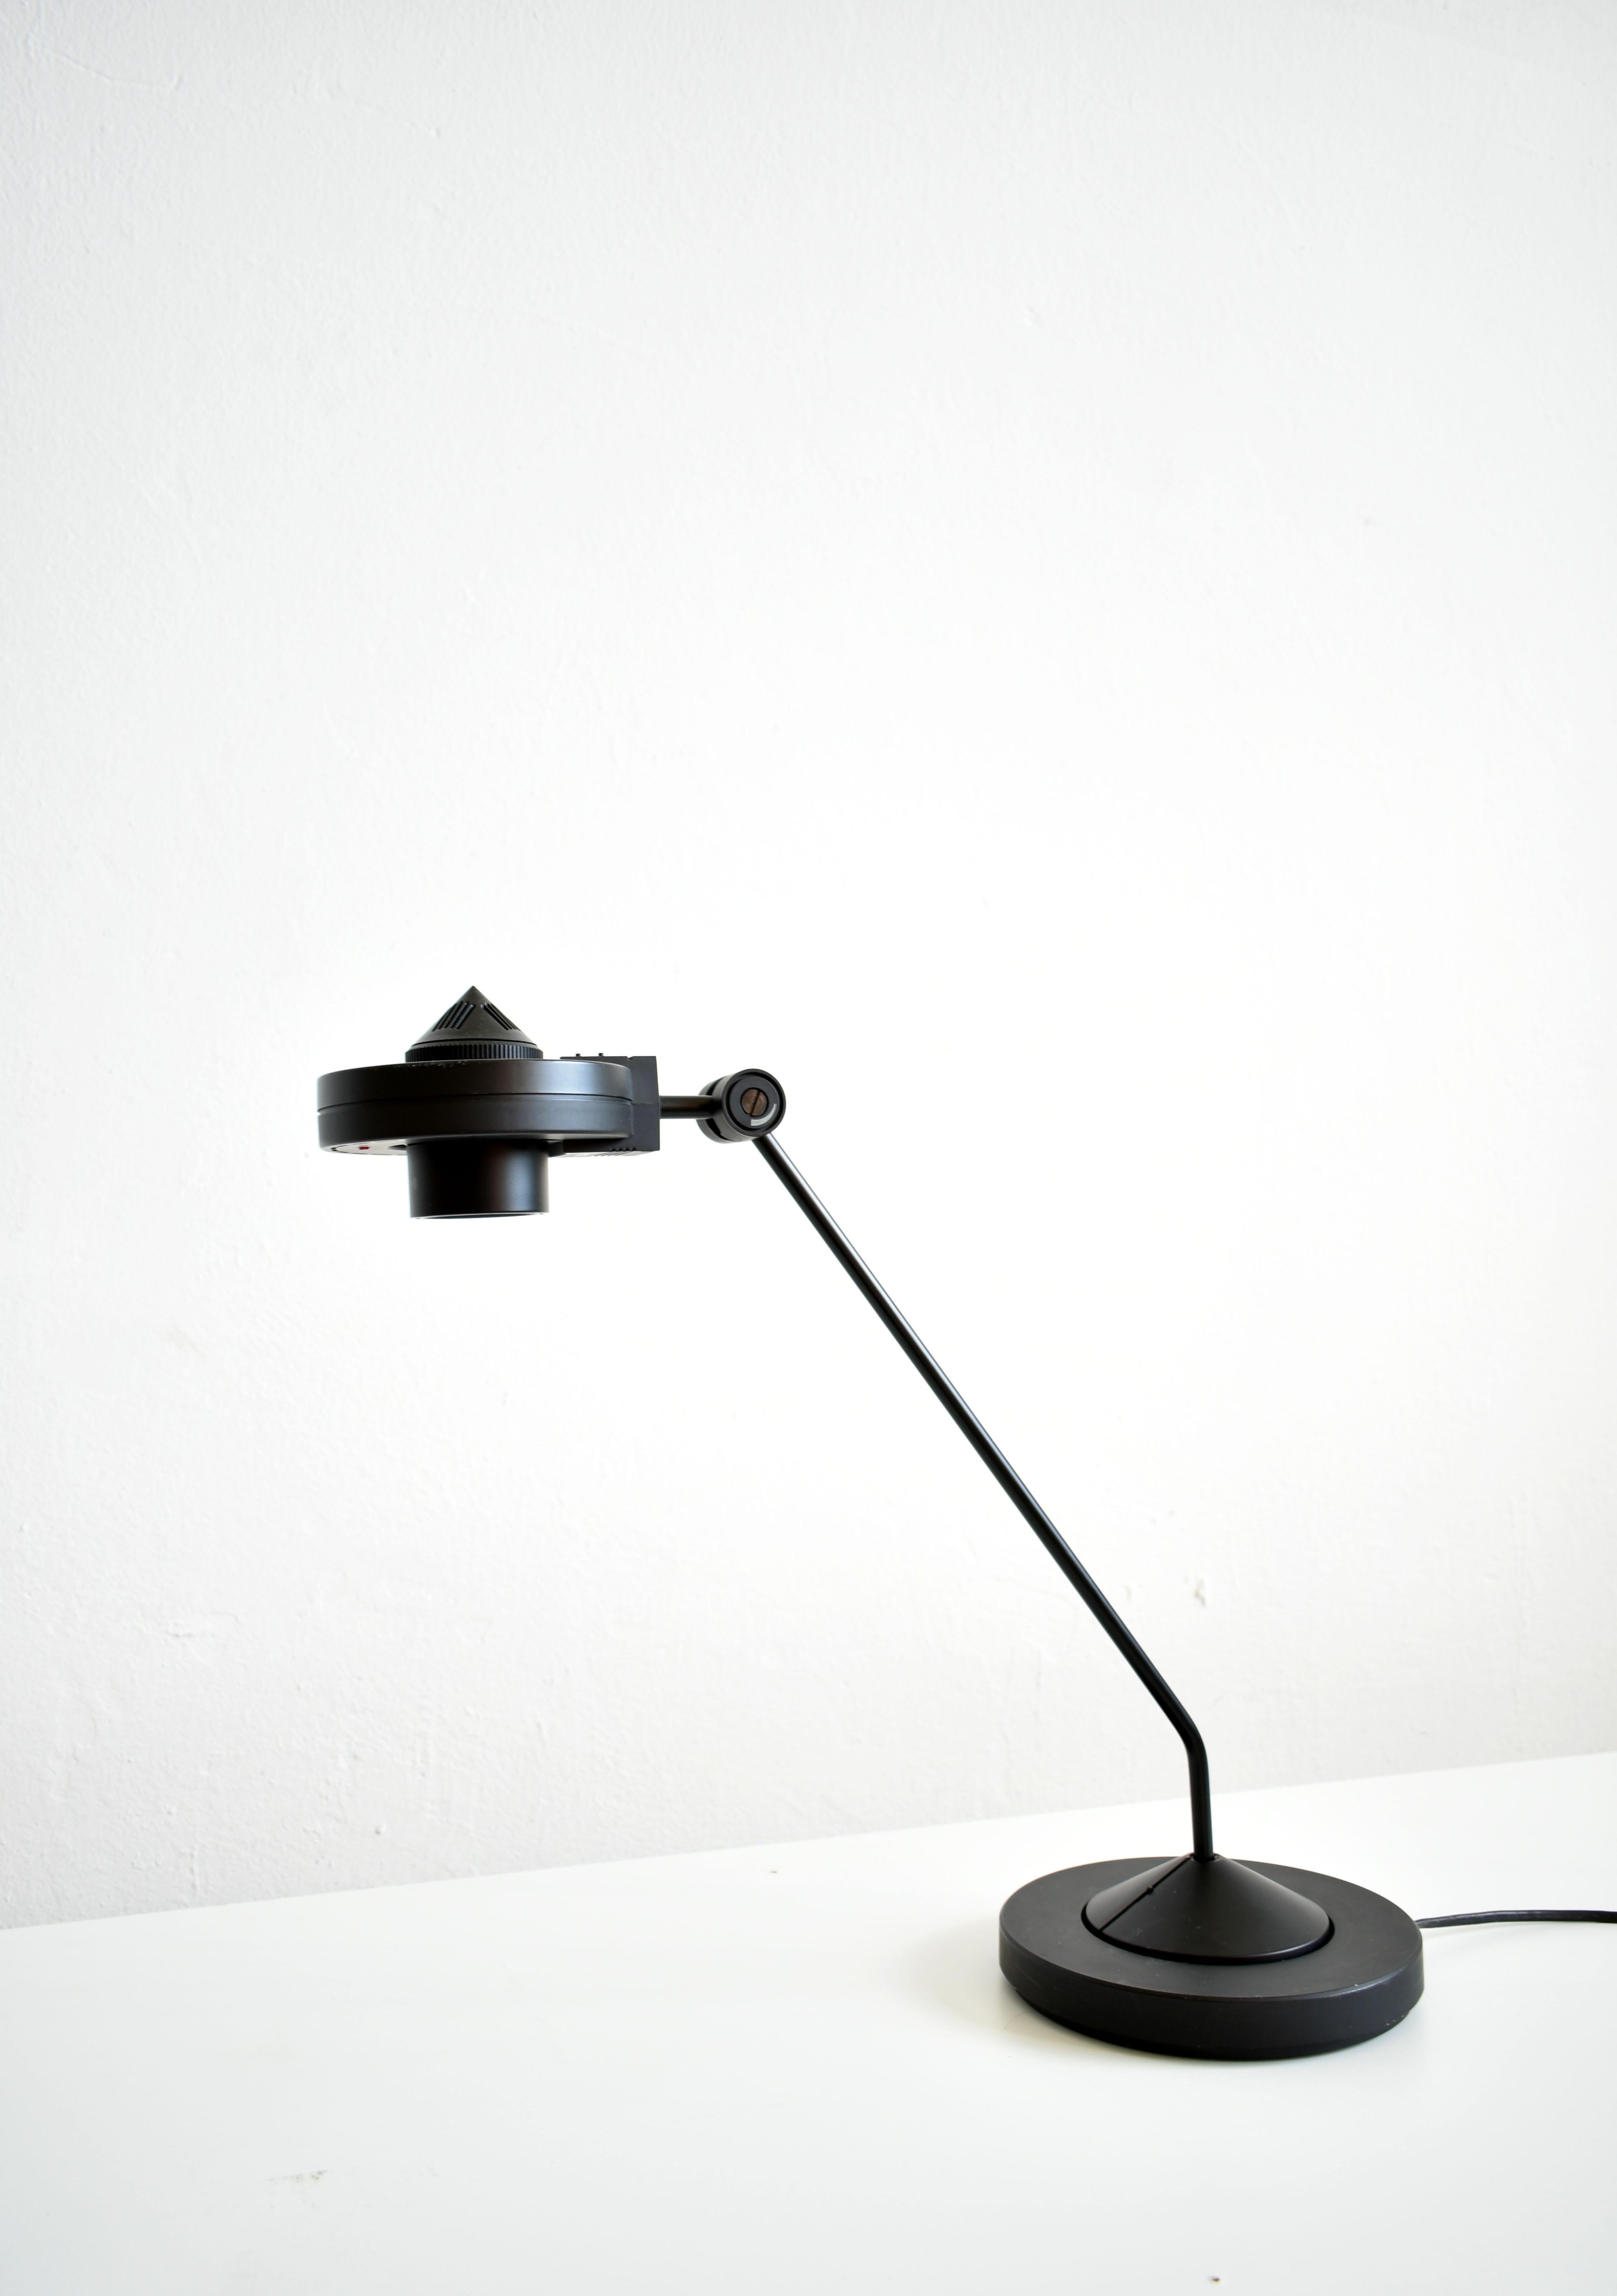 Schwarze dimmbare Halogen-Schreibtischlampe aus Metall und Kunststoff, hergestellt von der deutschen Firma Staff in den 1980er Jahren

Hochwertiges Design aus den 1980er Jahren

Die Leuchte wurde von dem deutschen Designer Hartmut S. Engels